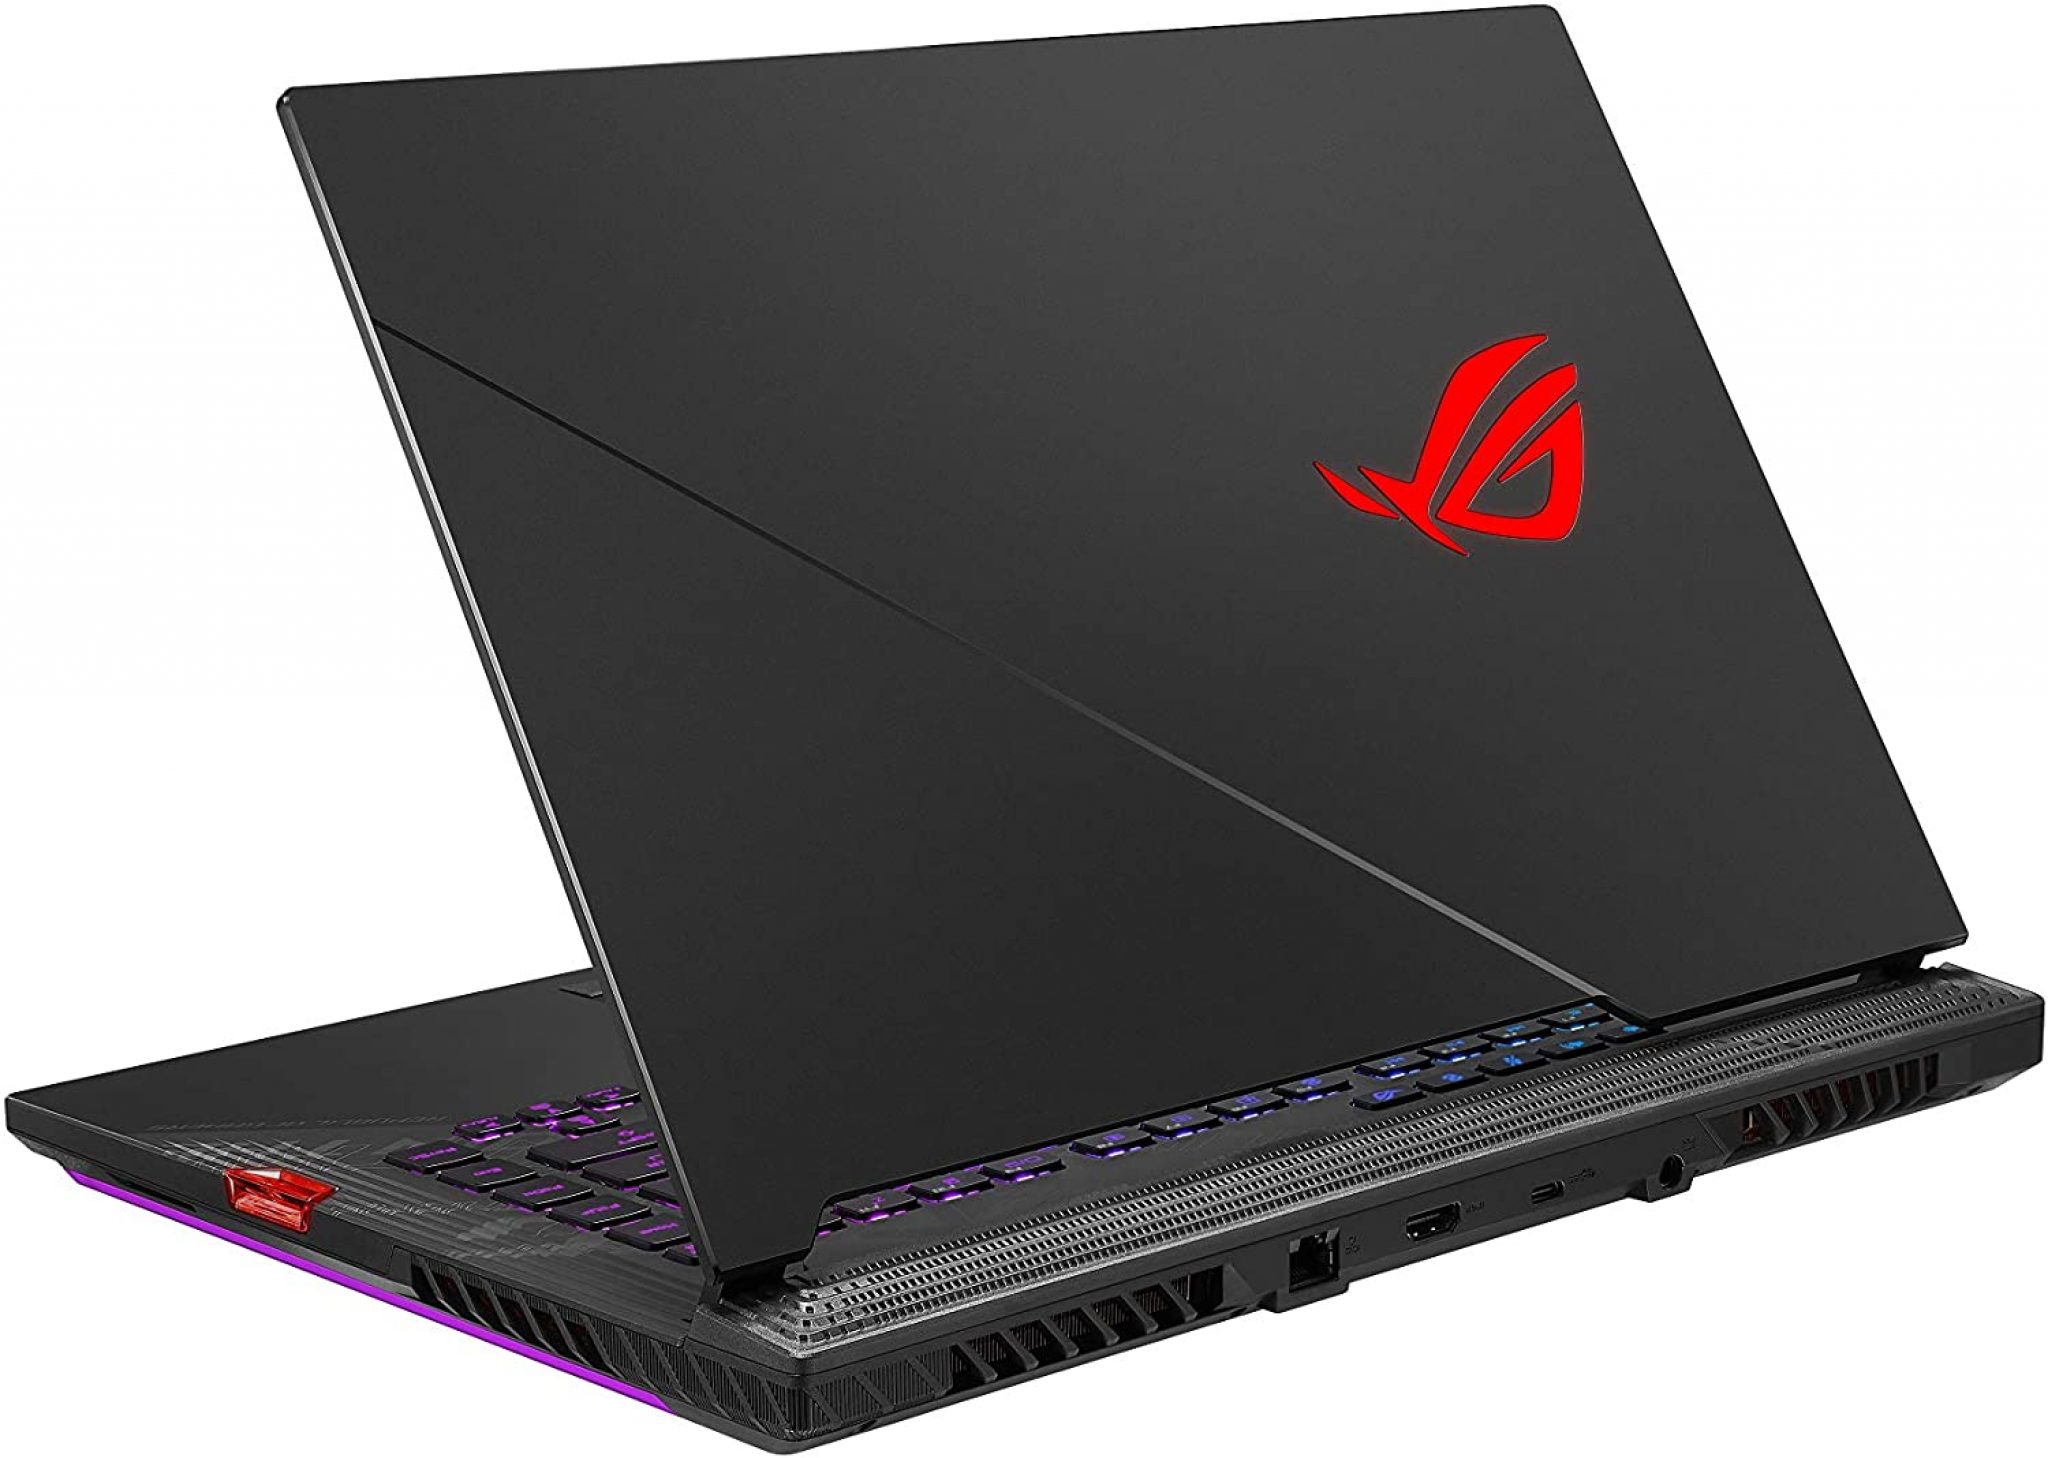 ASUS ROG Strix Scar 15 (2020) Gaming Laptop, 15.6” 240Hz IPS Type FHD